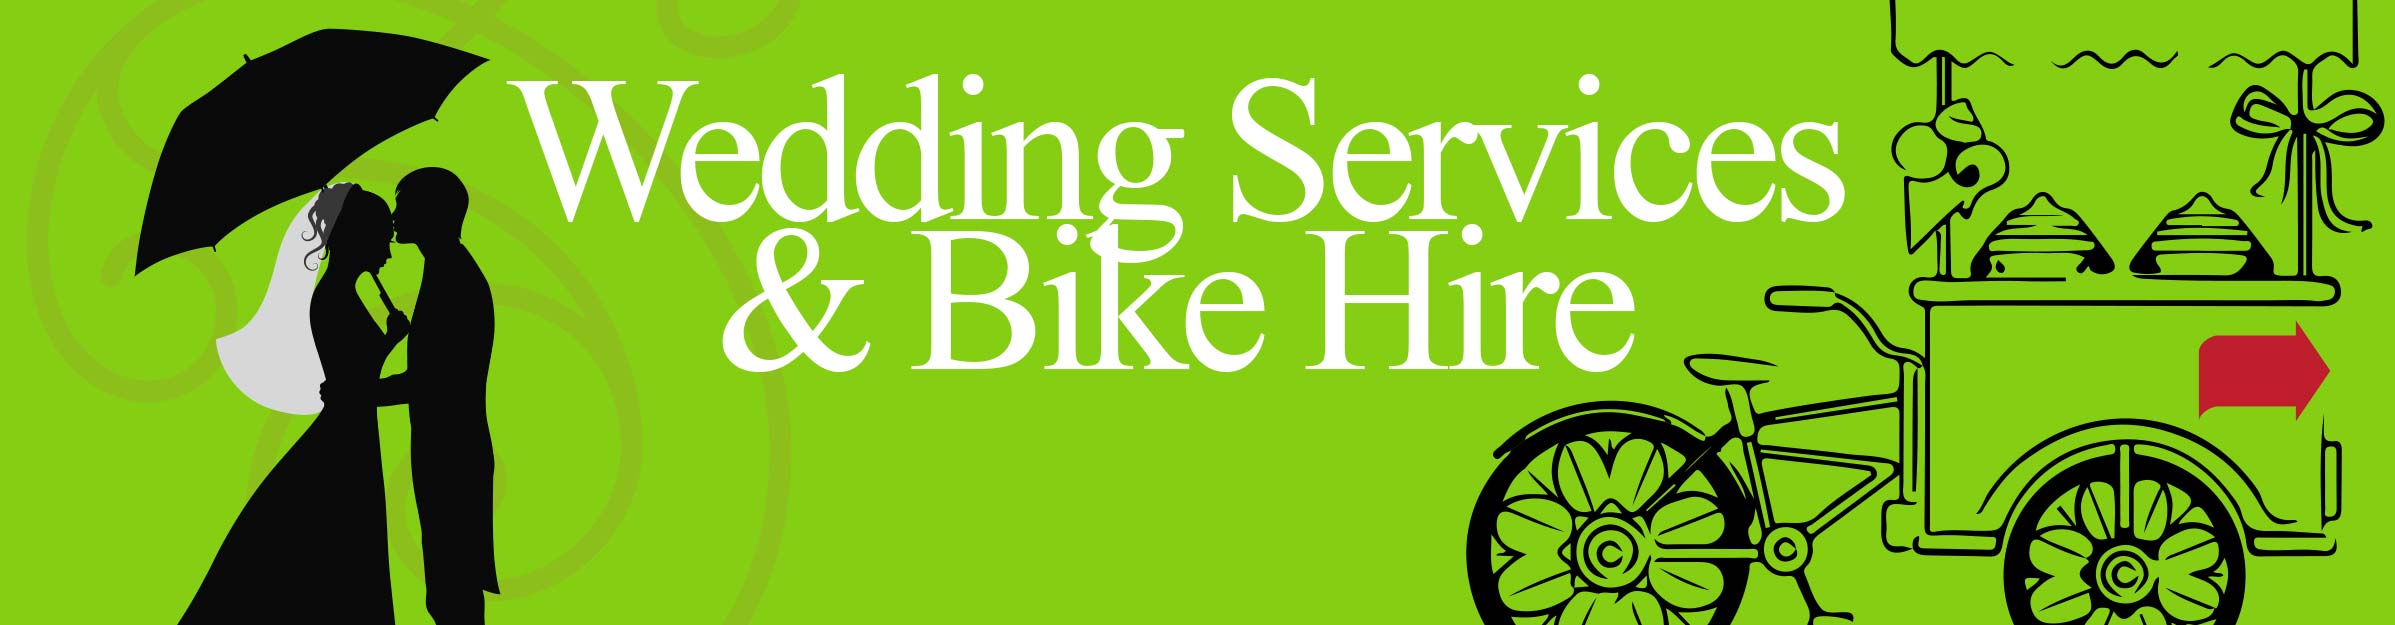 Wedding Bike Hire Services Ireland